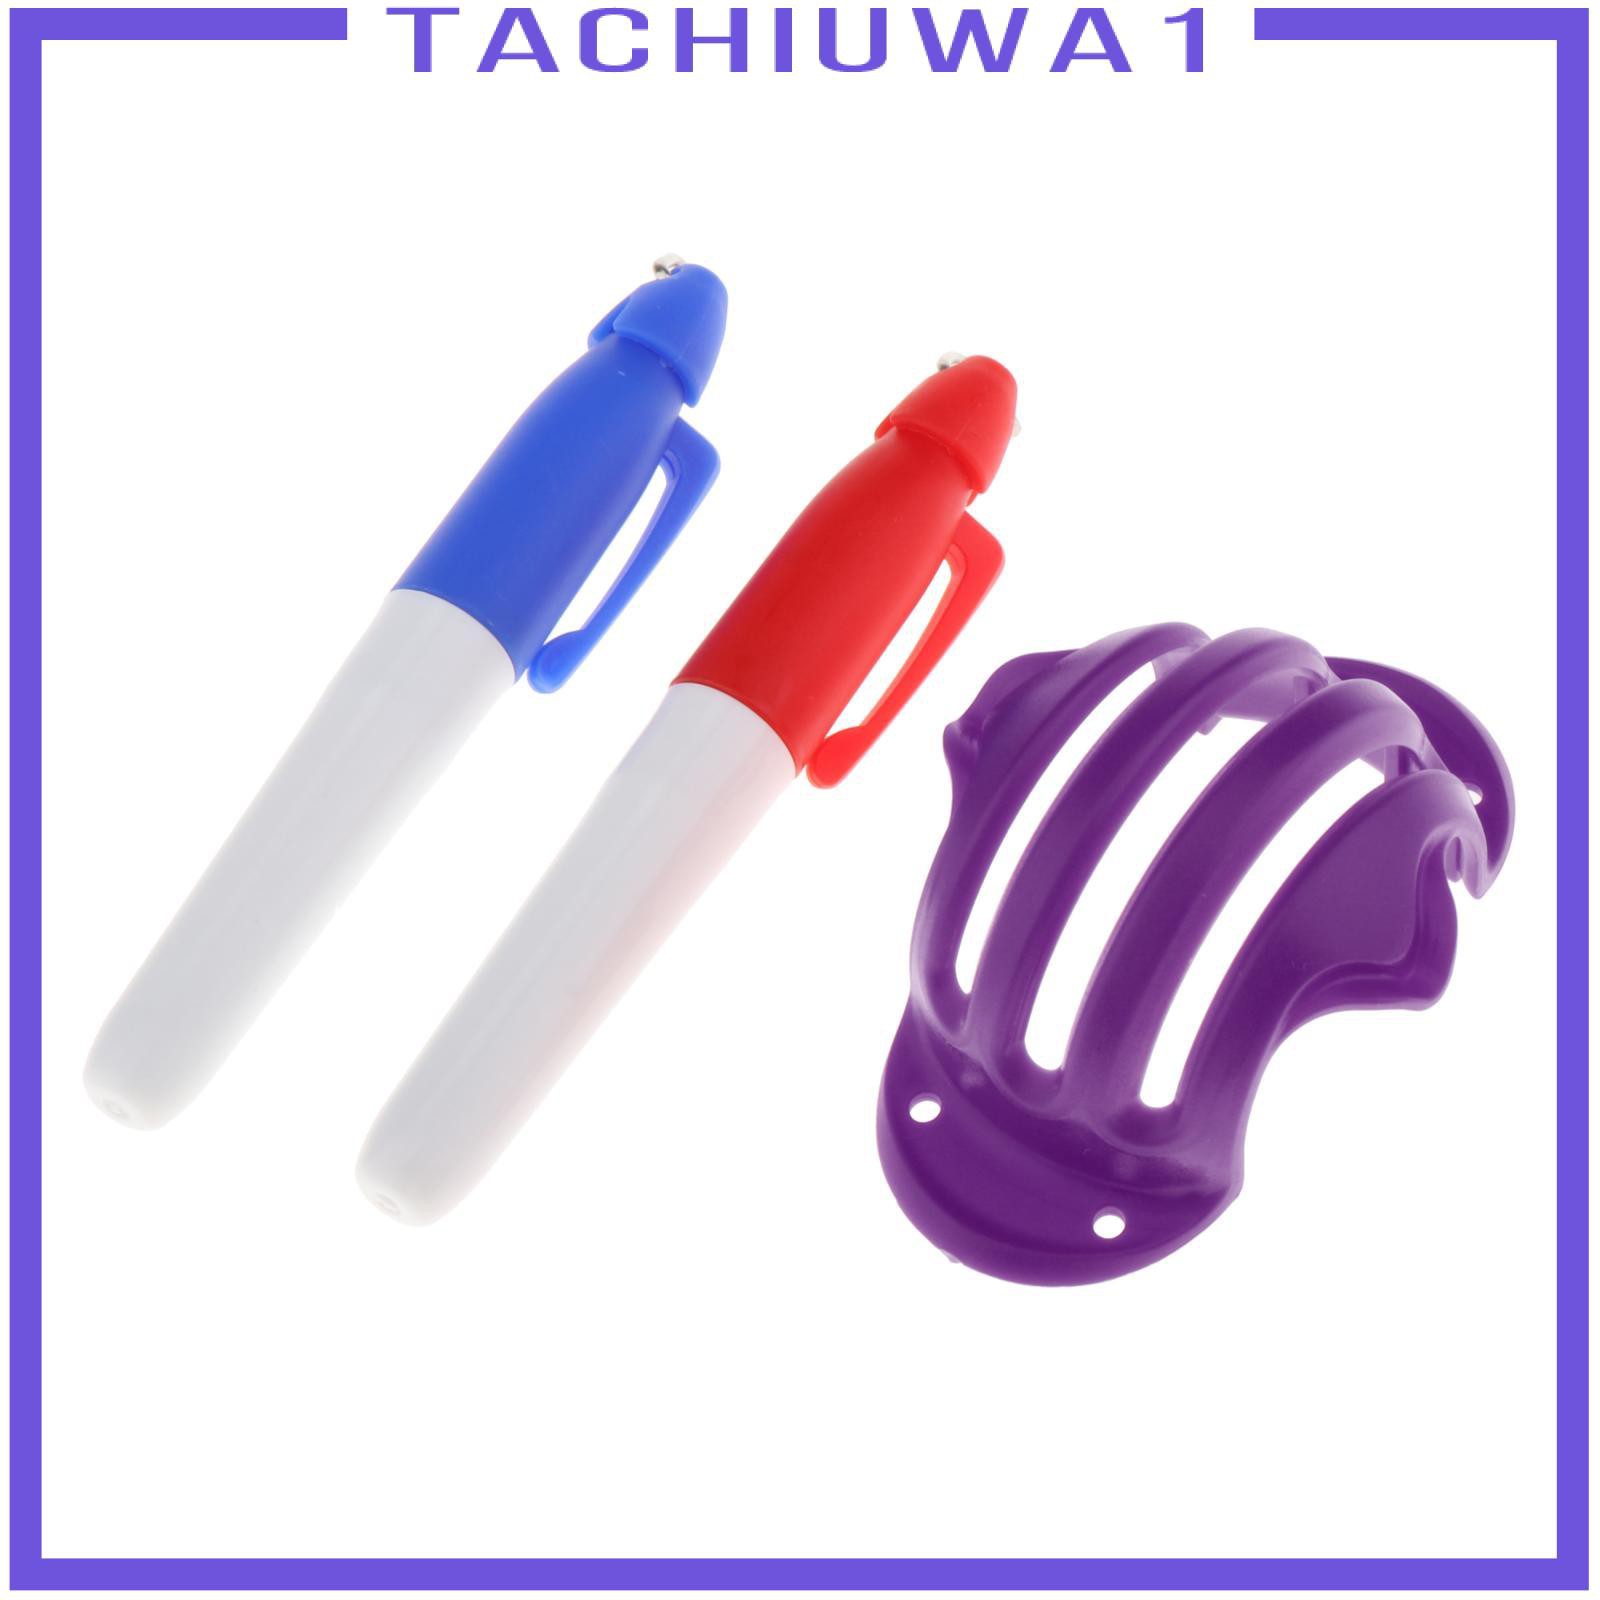 Bộ 3 Khuôn Vẽ Bóng Golf Tachiuwa1 Và 2 Bút Đánh Dấu Bóng Golf